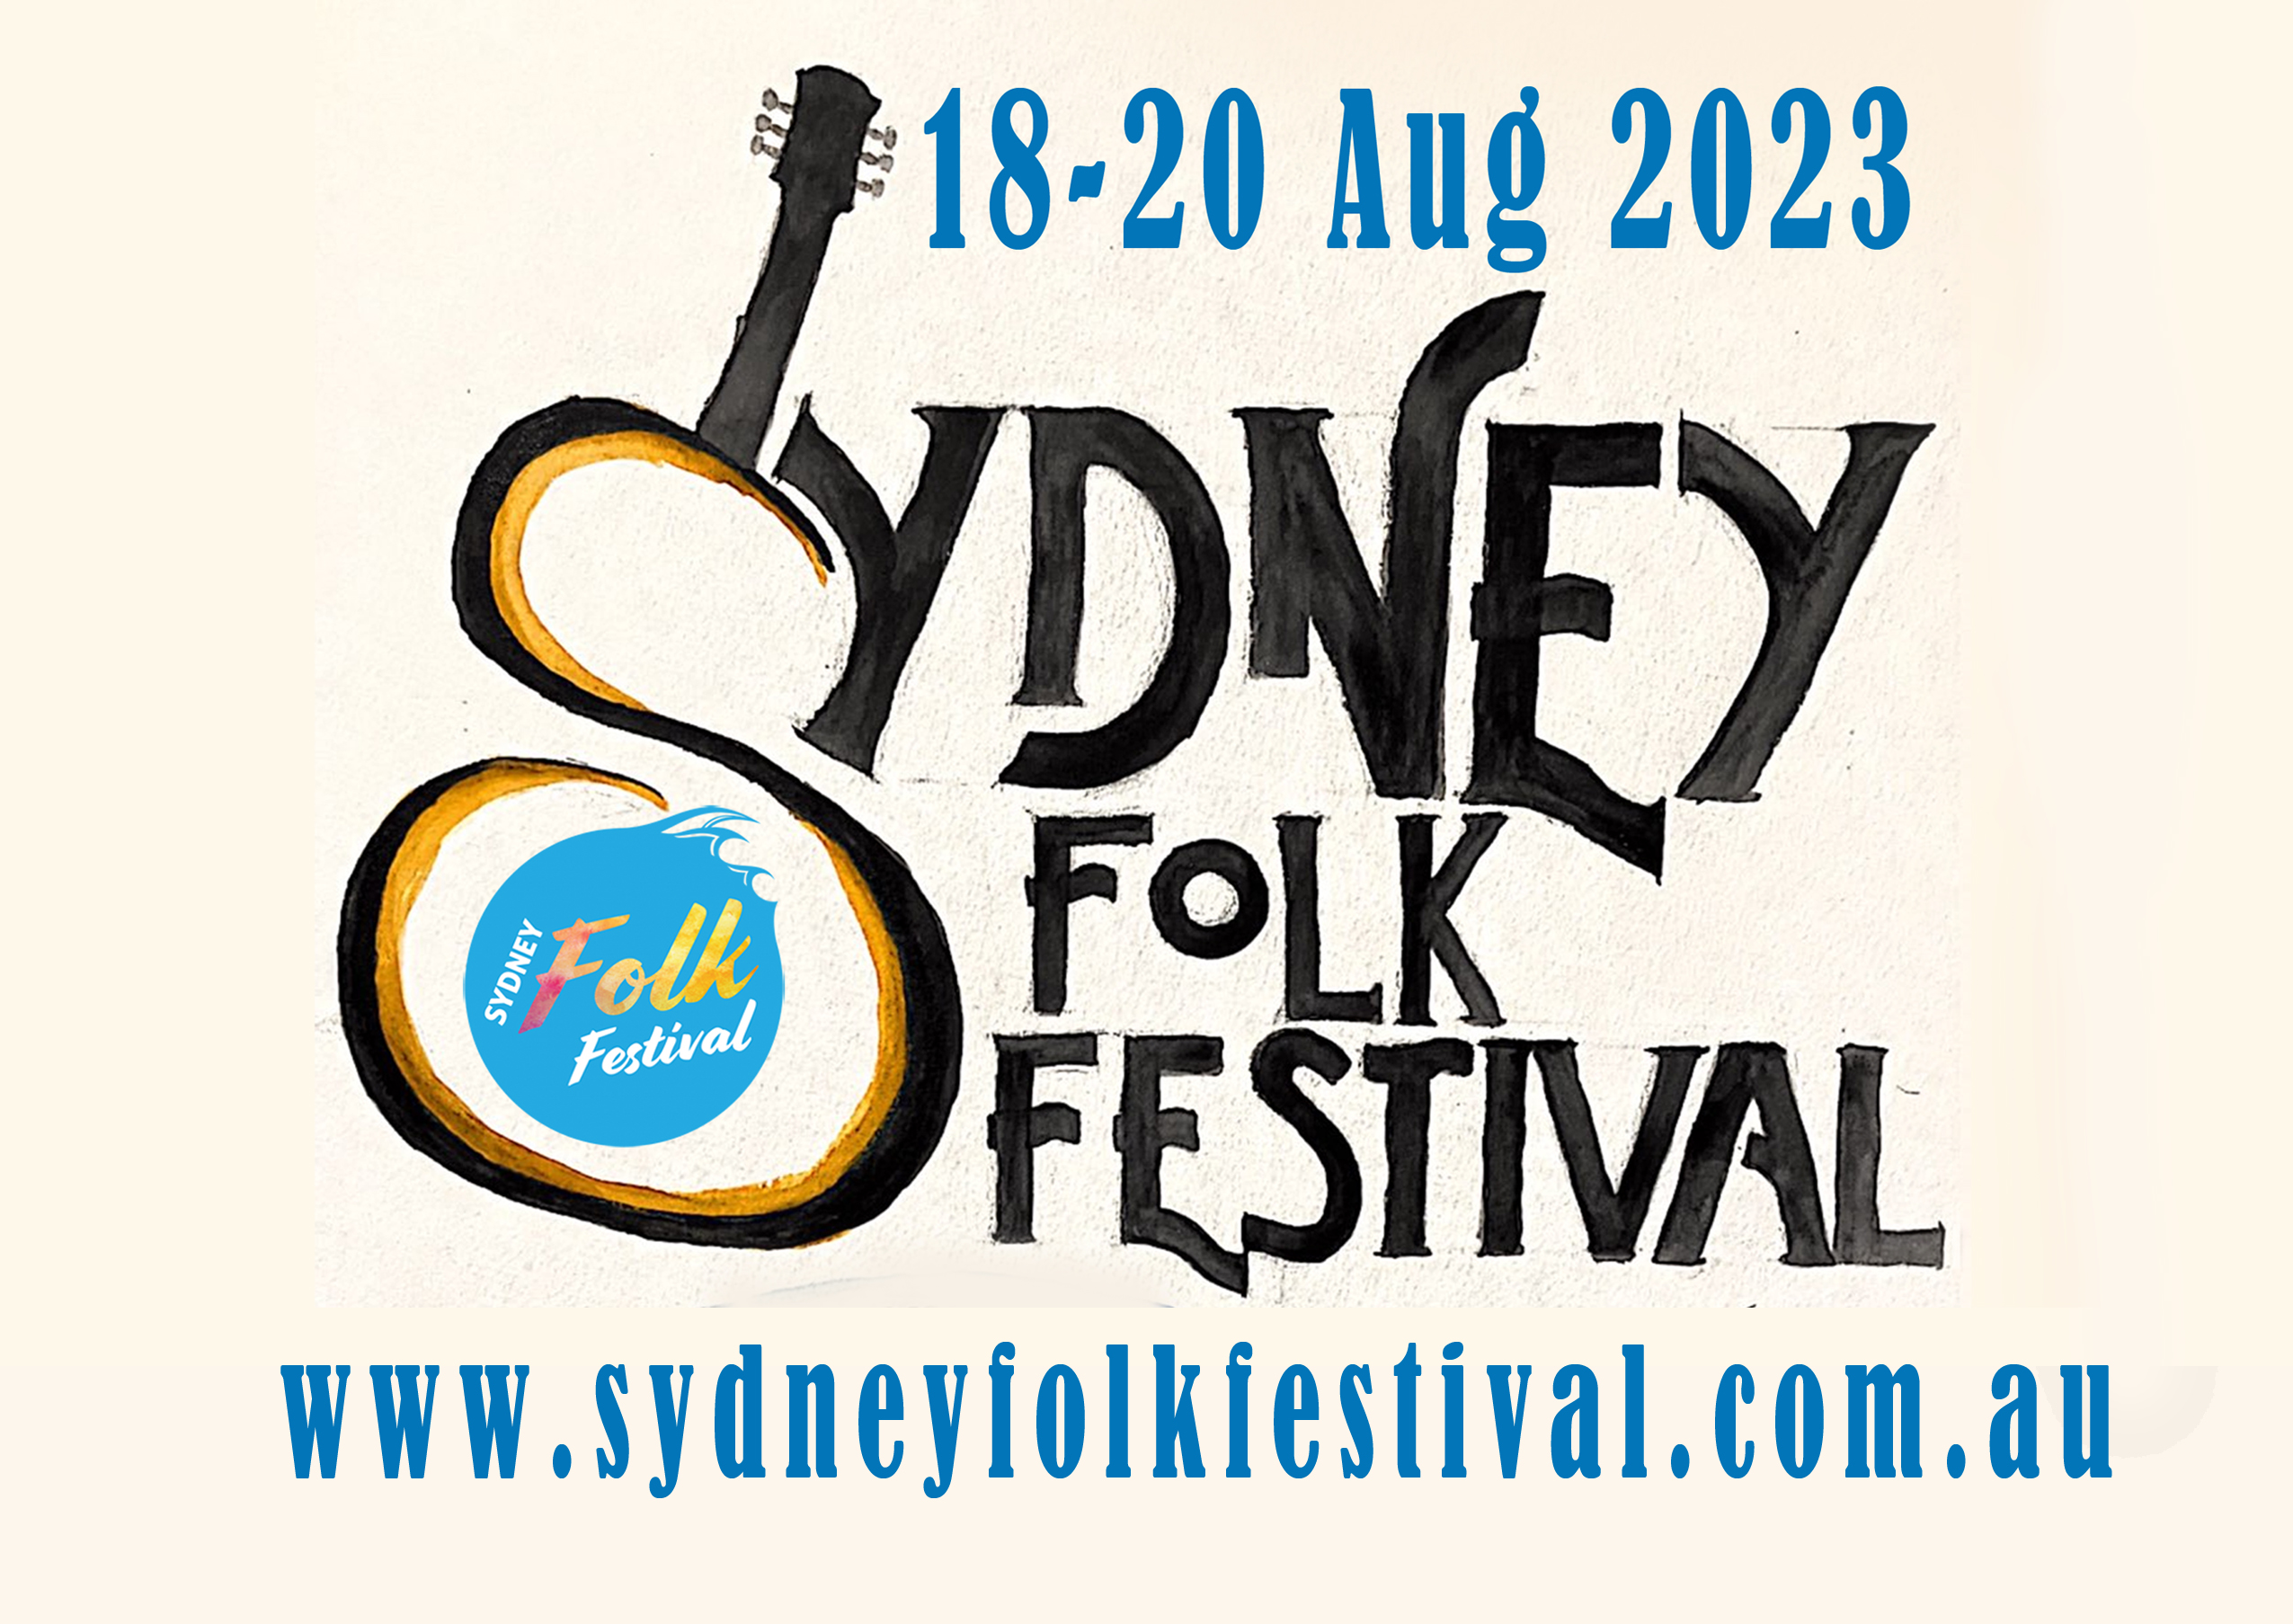 Sydney Folk Festival 1820 August 2023 The Folk Federation of NSW